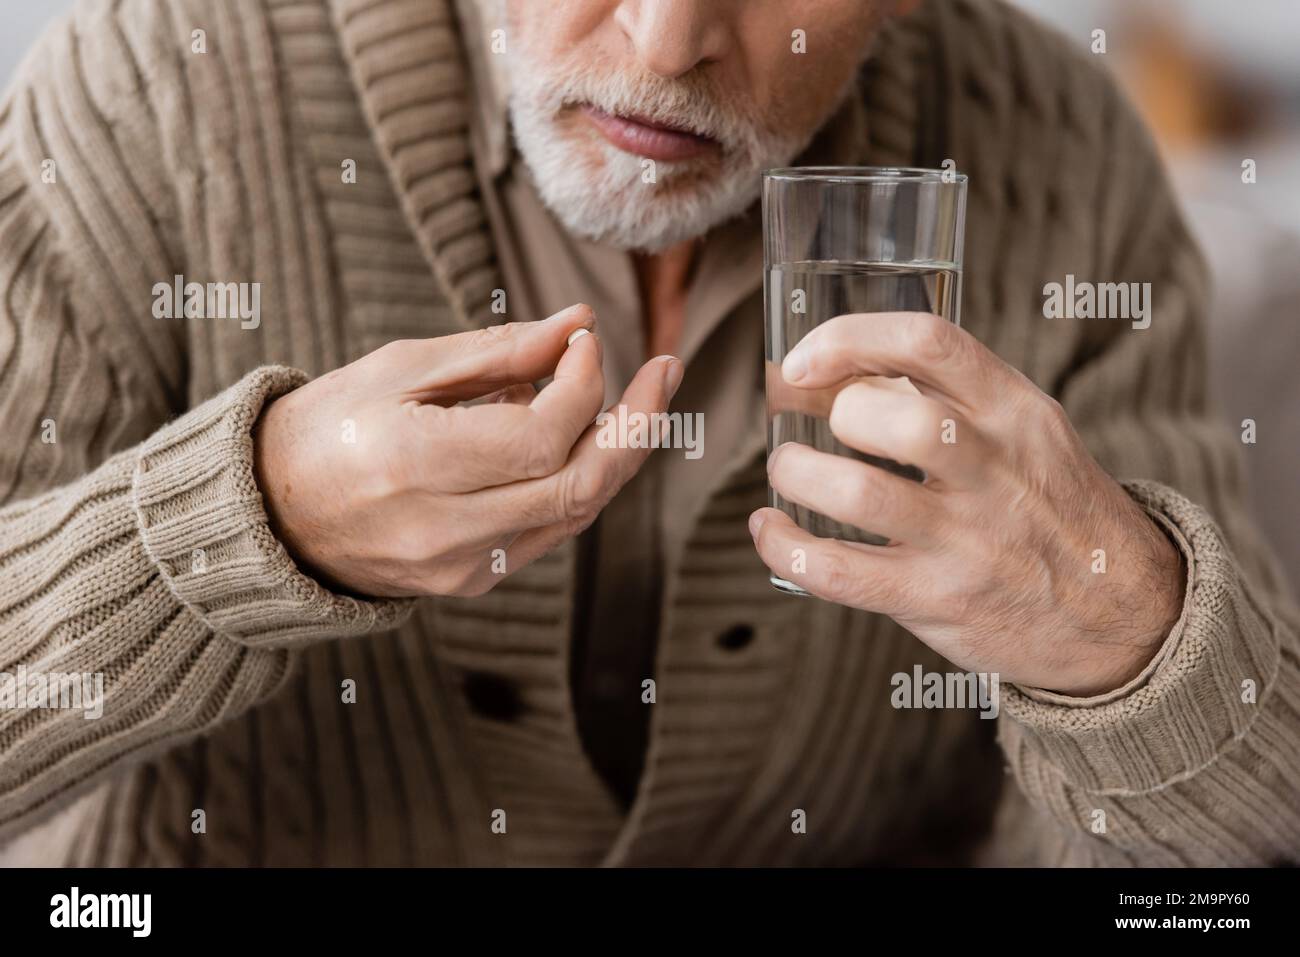 vista parziale dell'uomo anziano con la pillola del morbo di parkinson e il vetro di acqua nelle mani tremanti, immagine di scorta Foto Stock